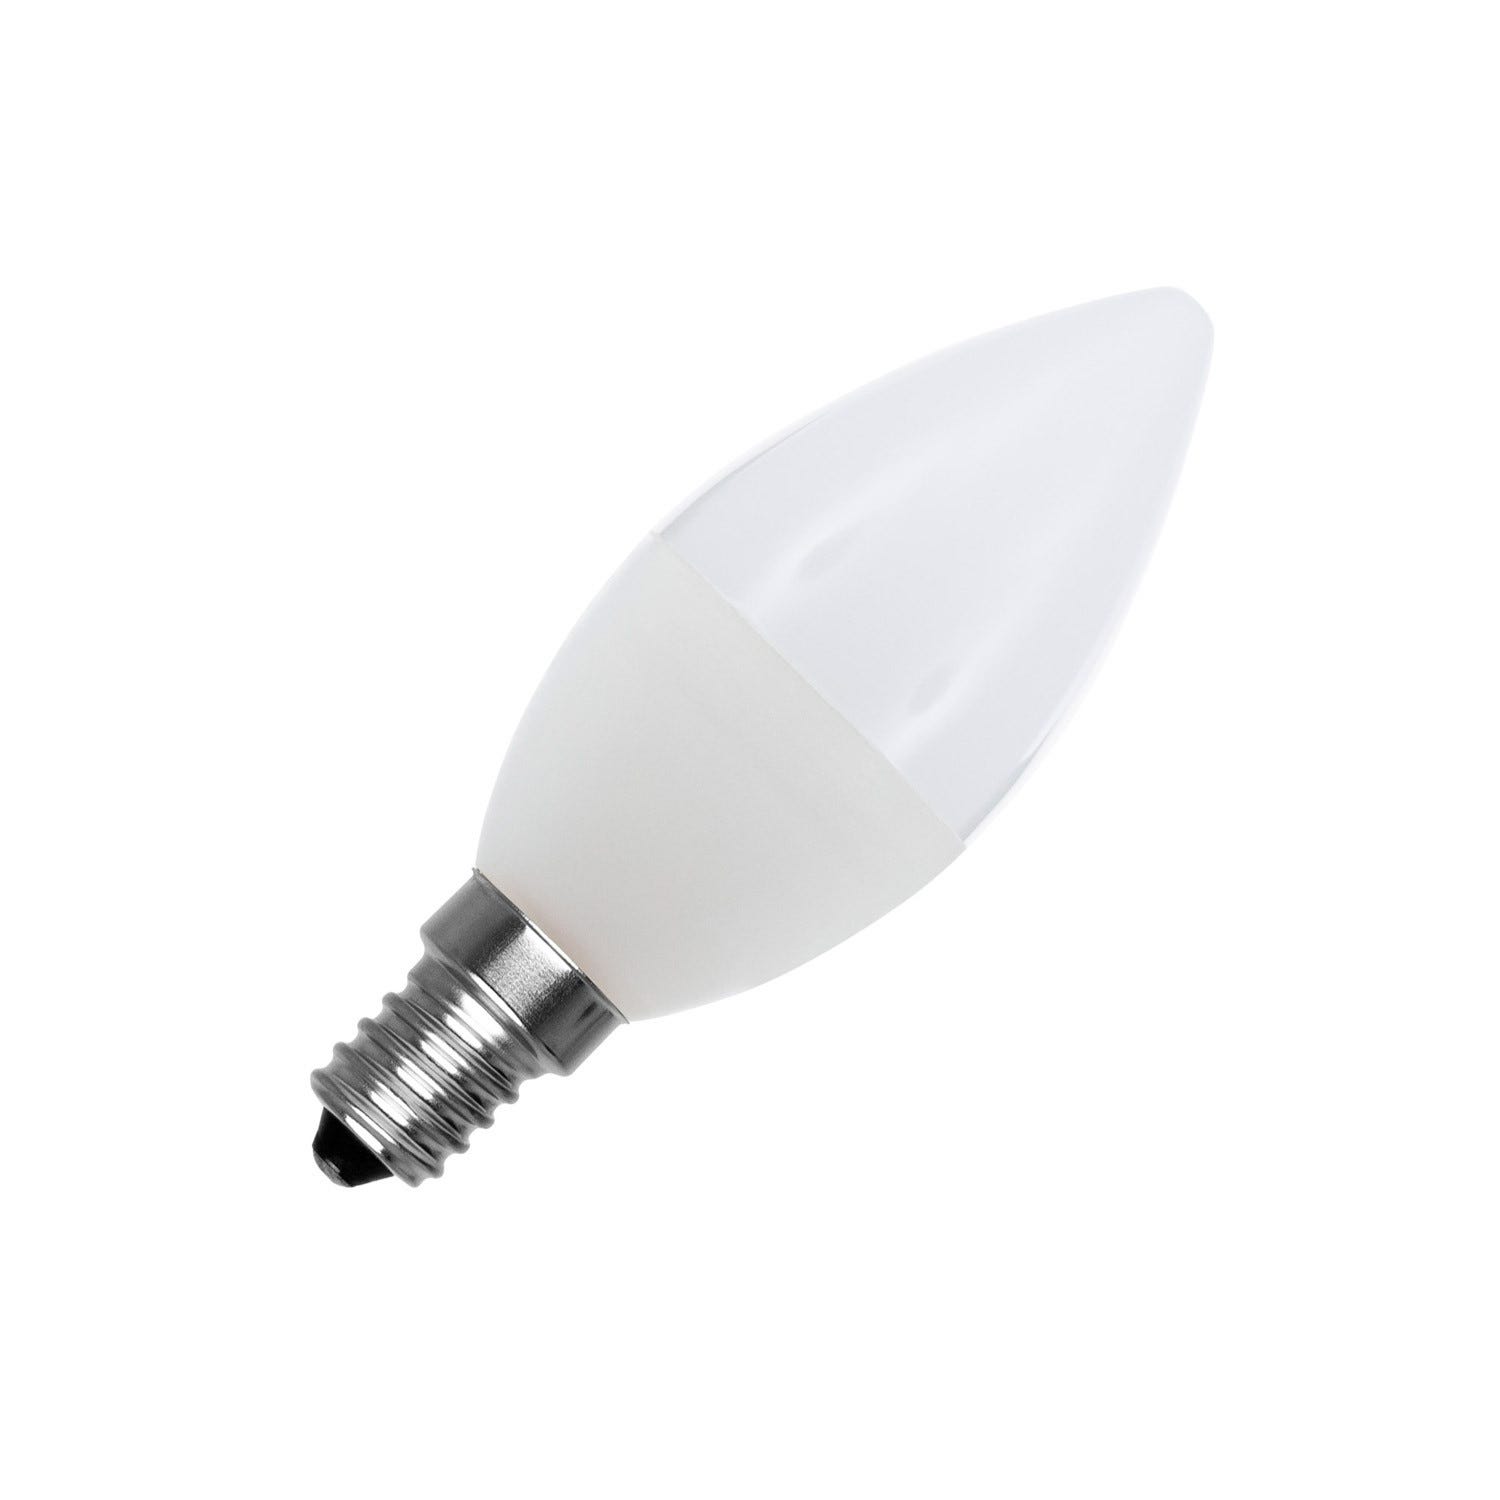 LUTW Ampoule LED E14 Blanc Froid 6500K, Ampoule Bougie LED C37, 5W  Équivalent 40W, 545LM, Ampoule